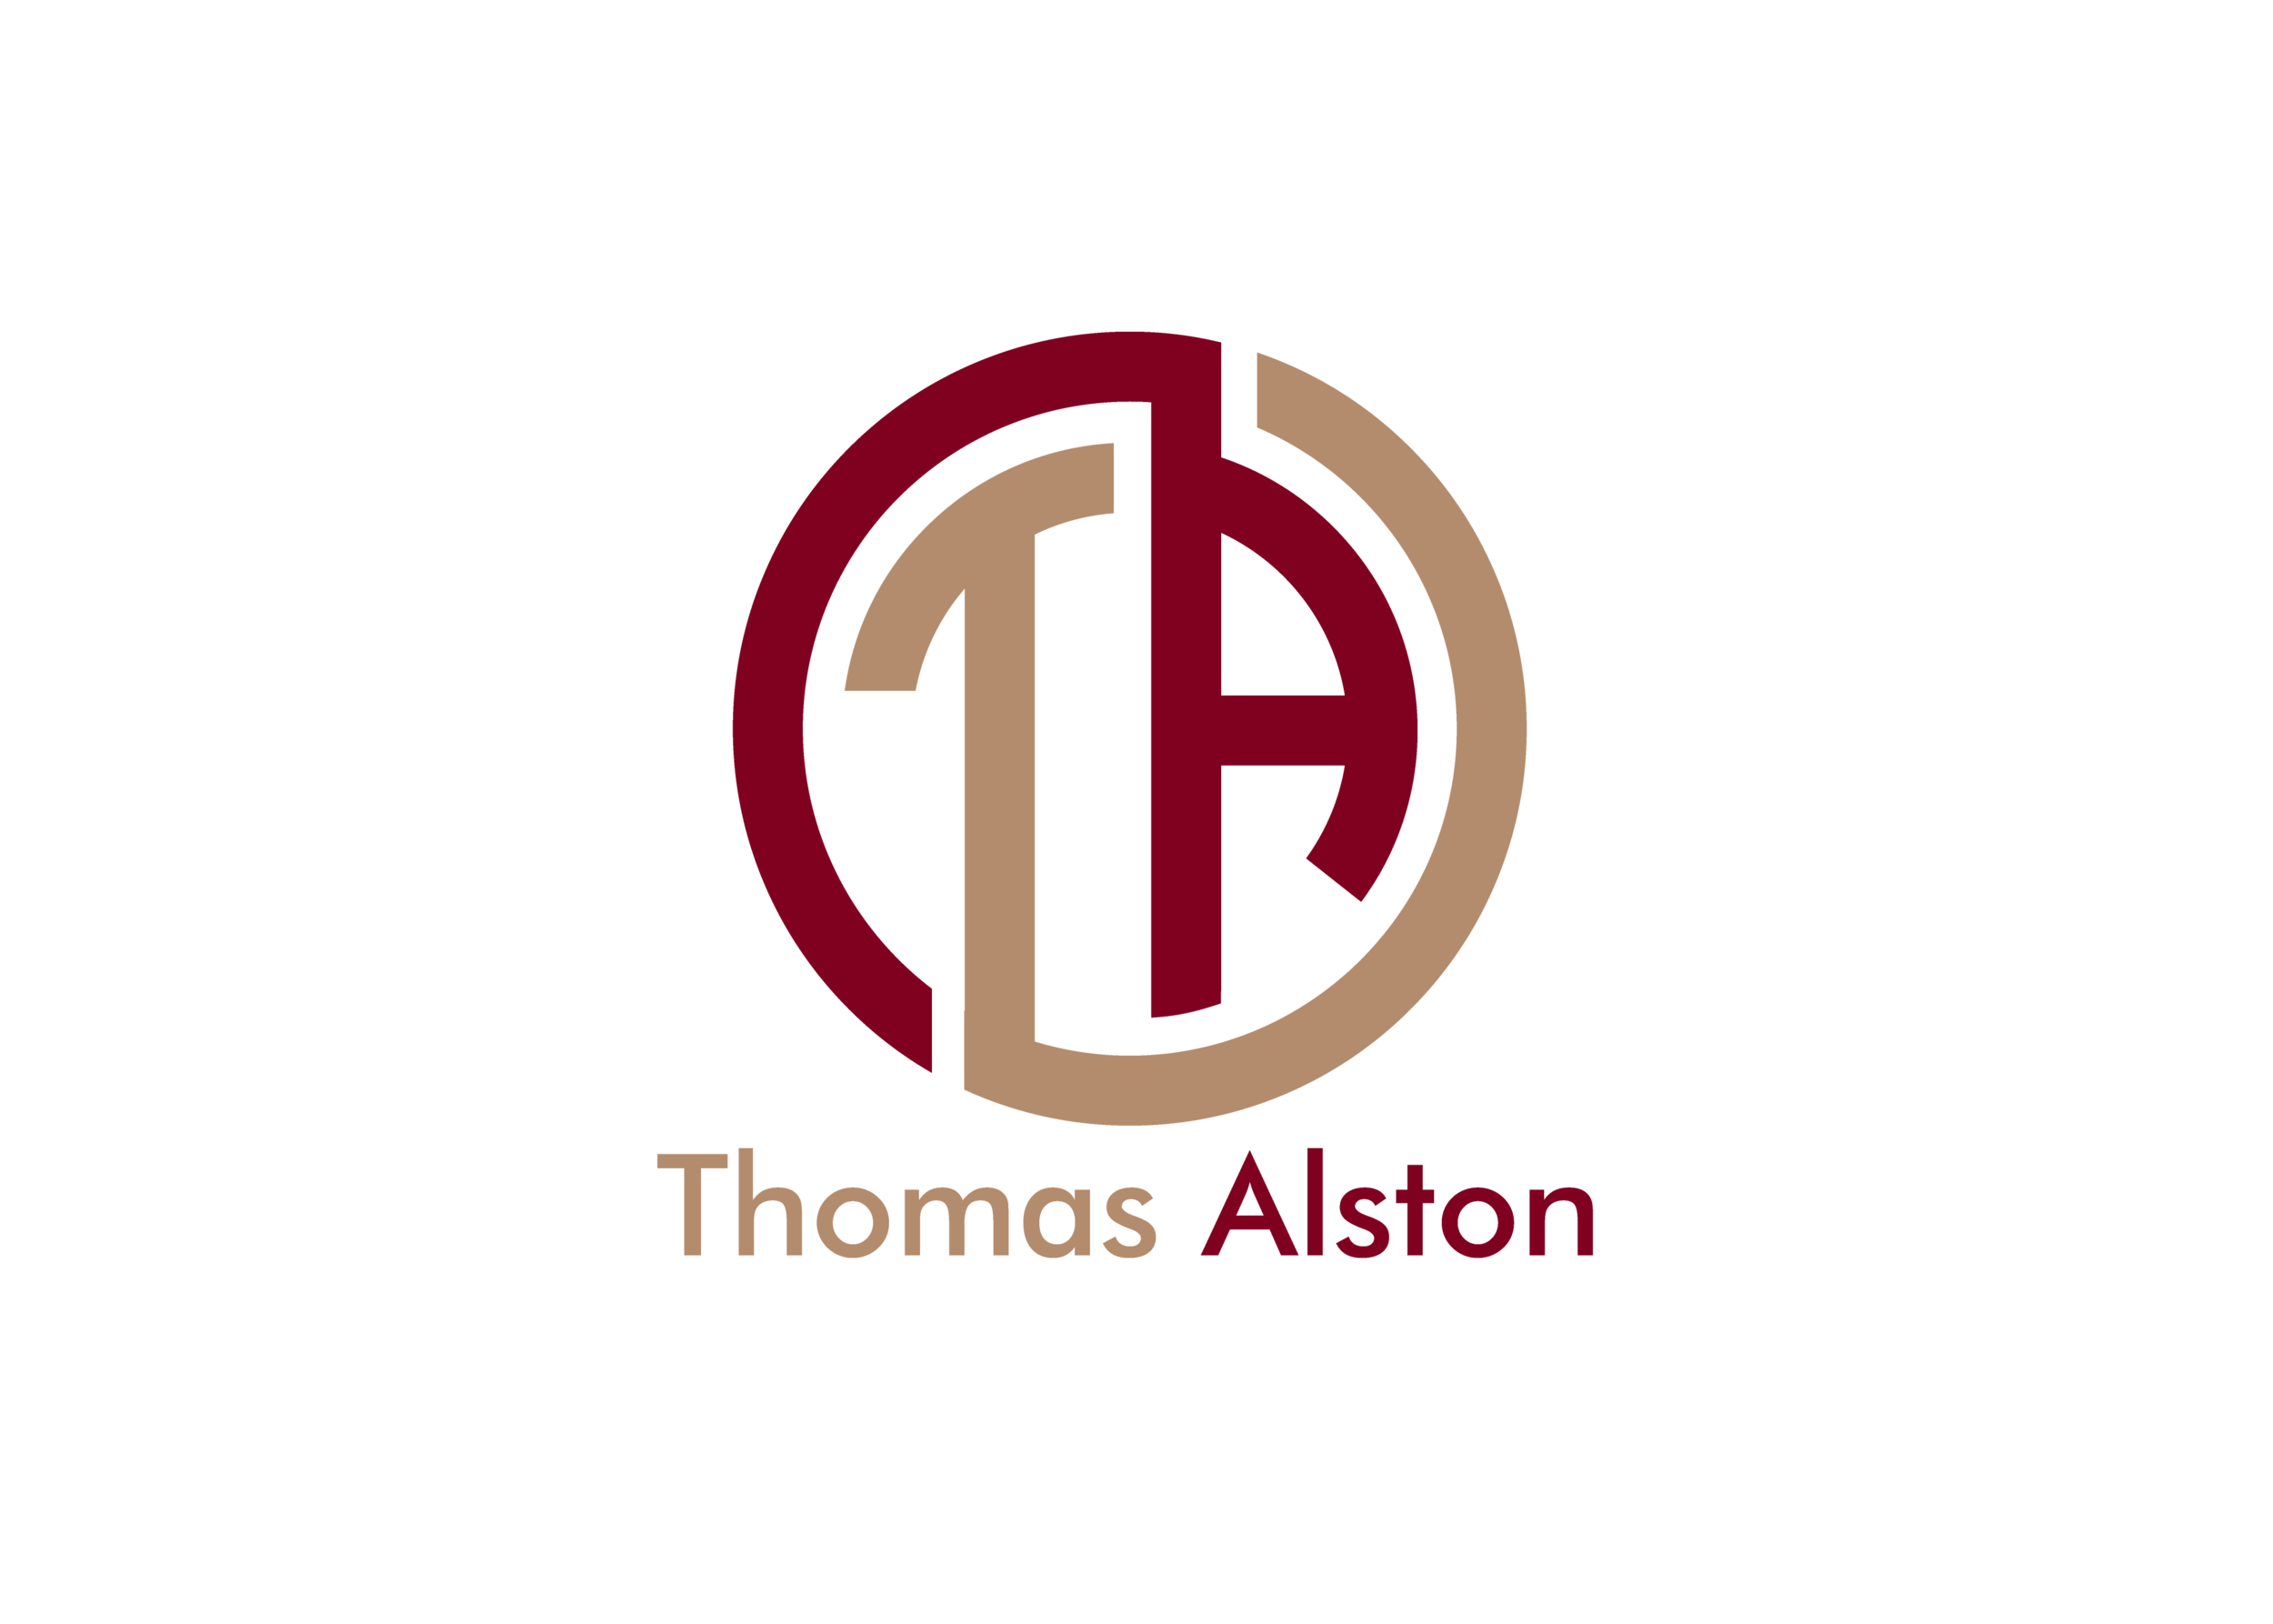 Thomas Alston